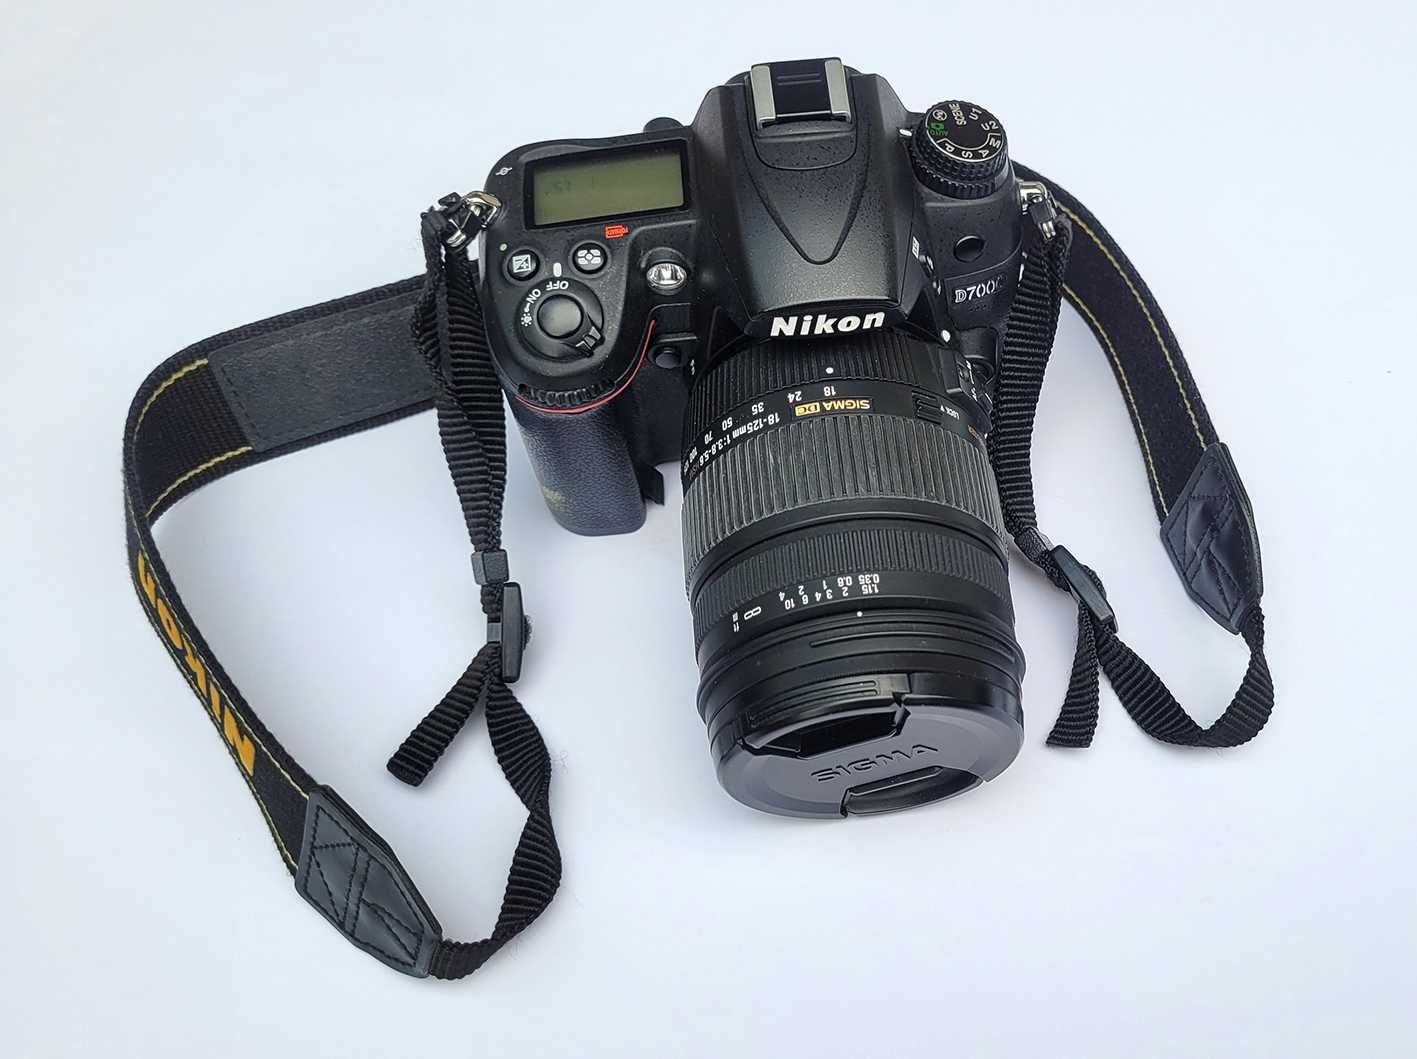 Aparat Nikon D7000 + obiektyw Sigma DC 18-125mm + akcesoria